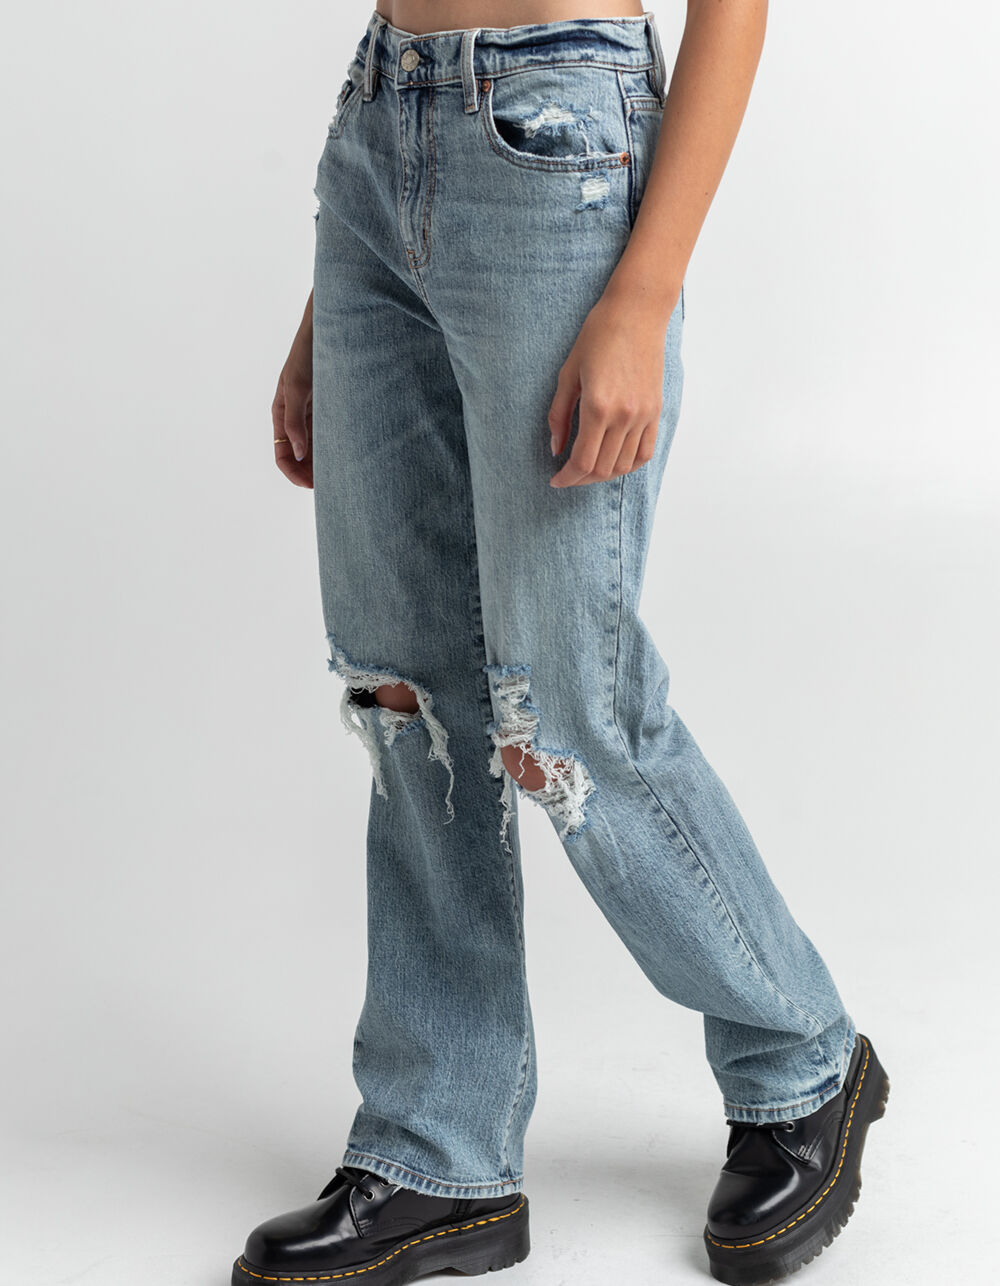 DAZE 90s Slouchy Jeans - MEDDS | Tillys